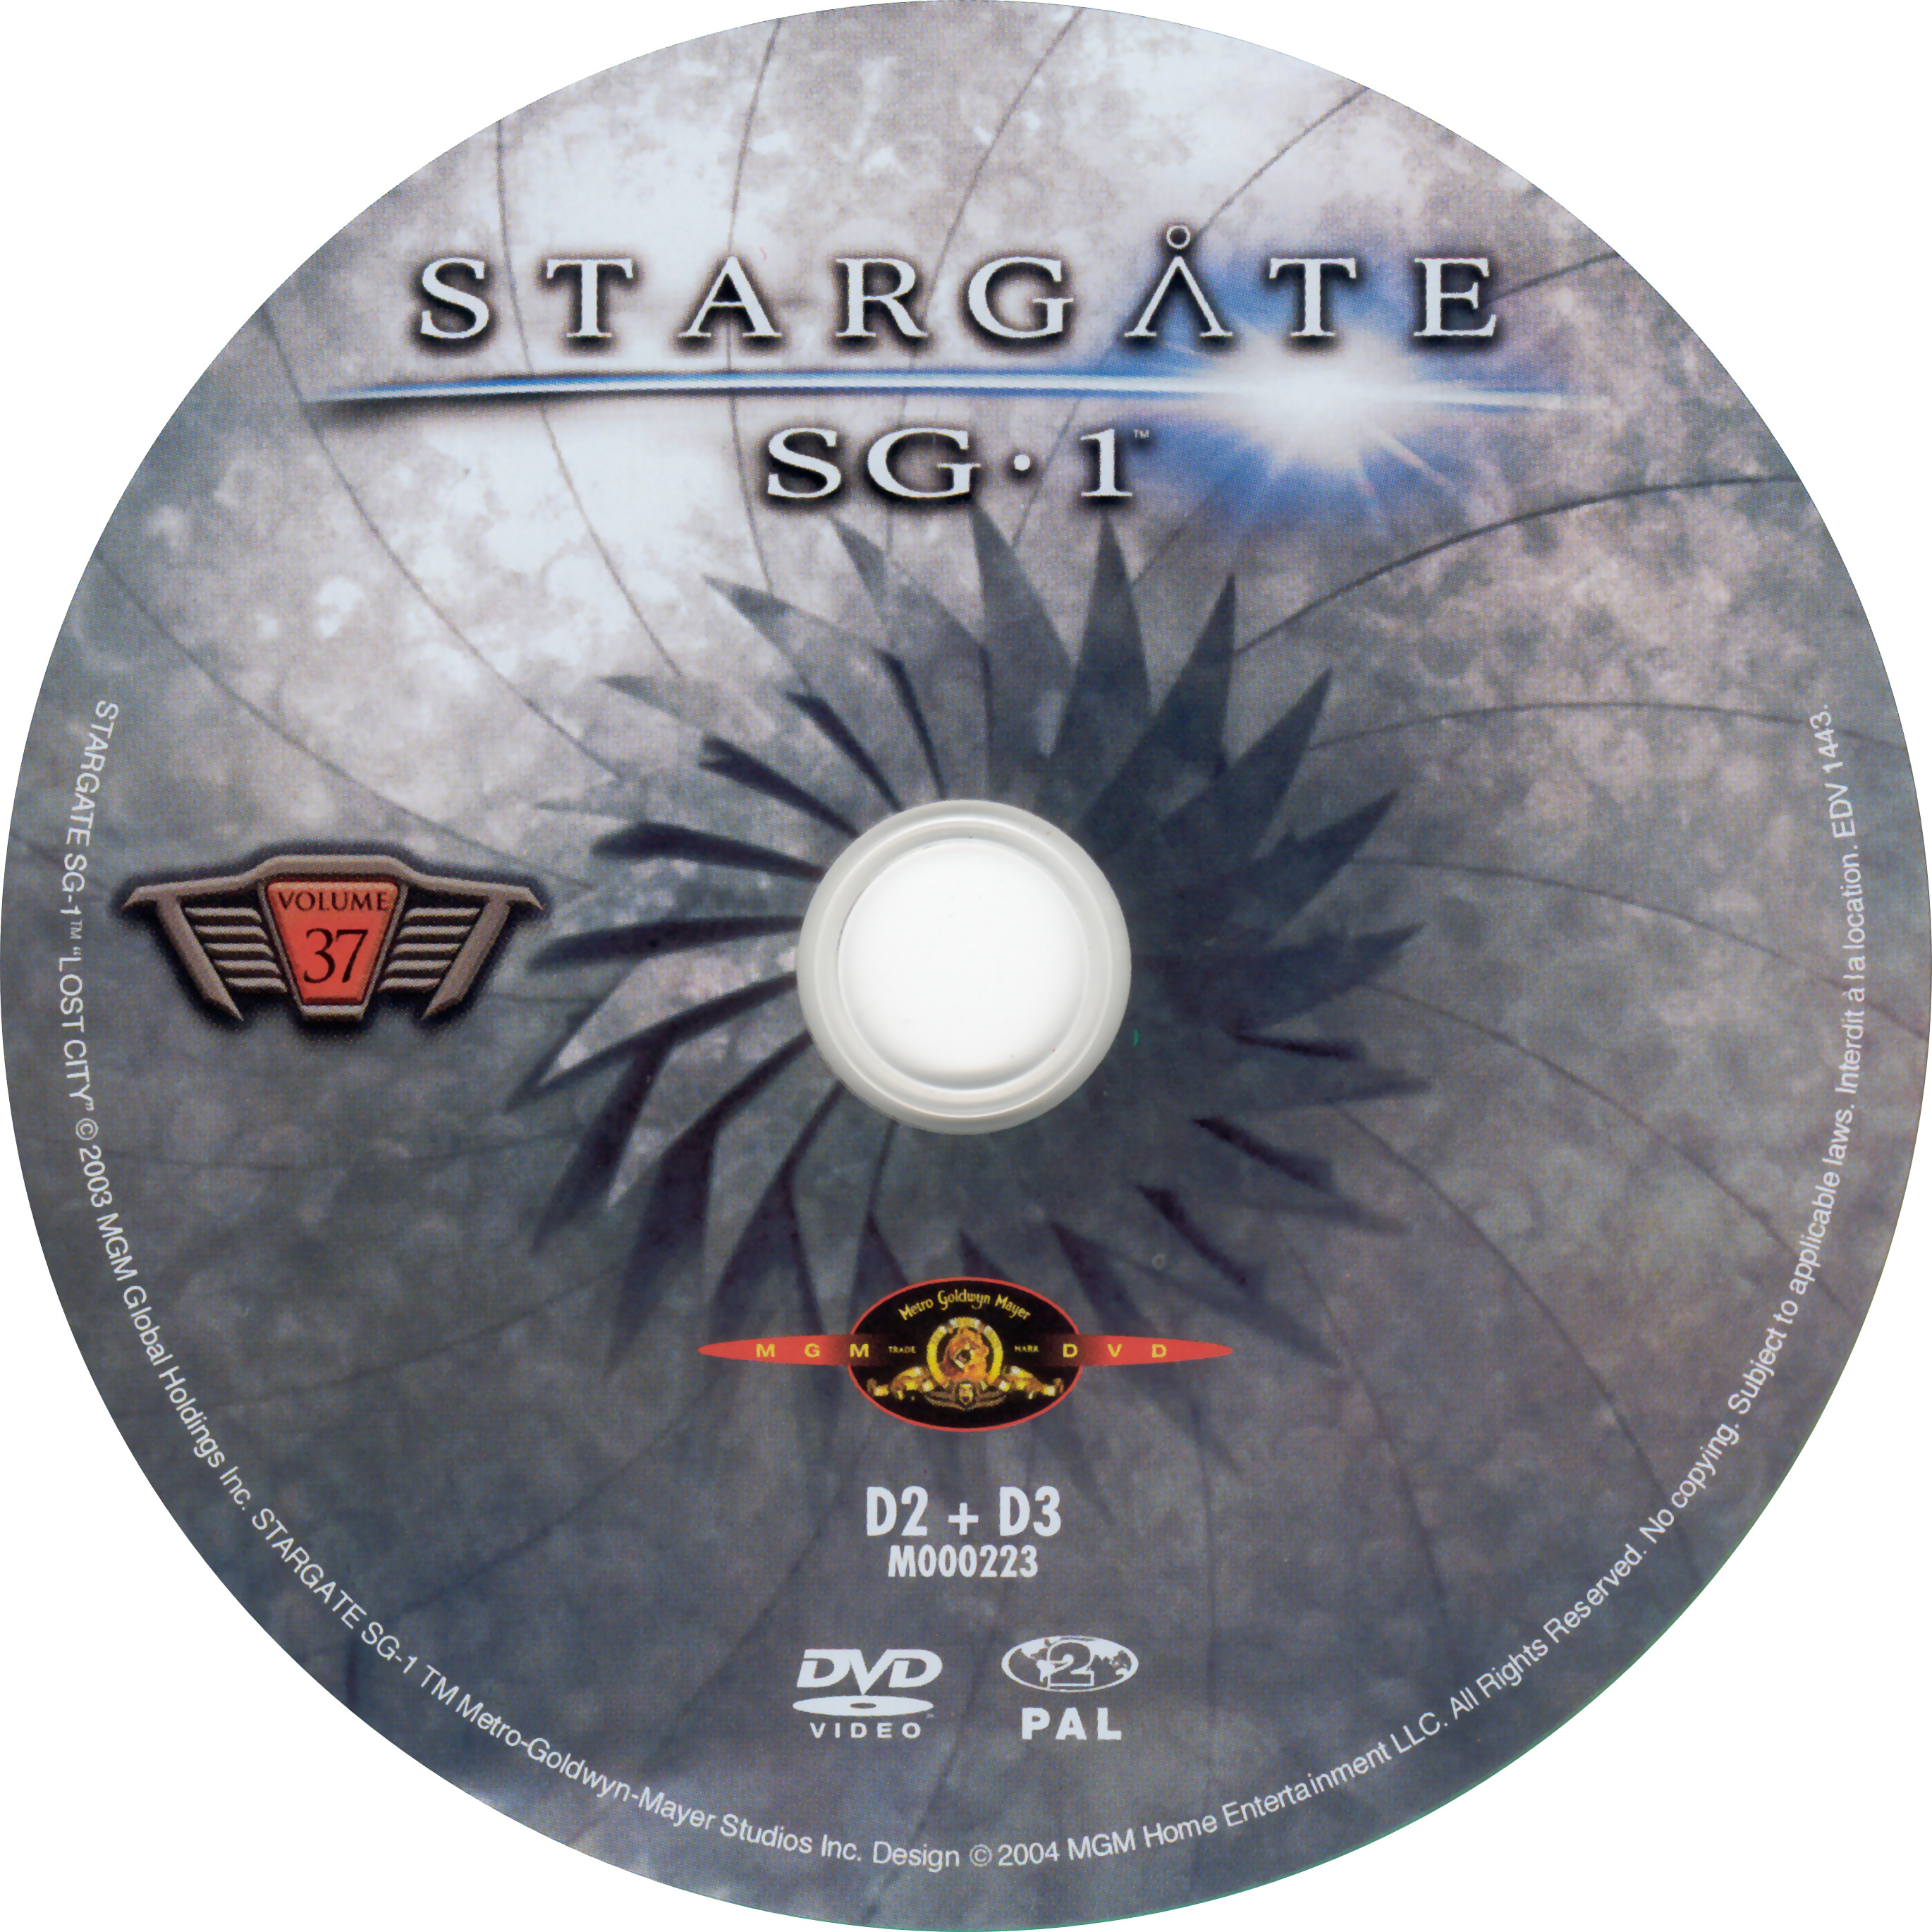 Stargate SG1 vol 37